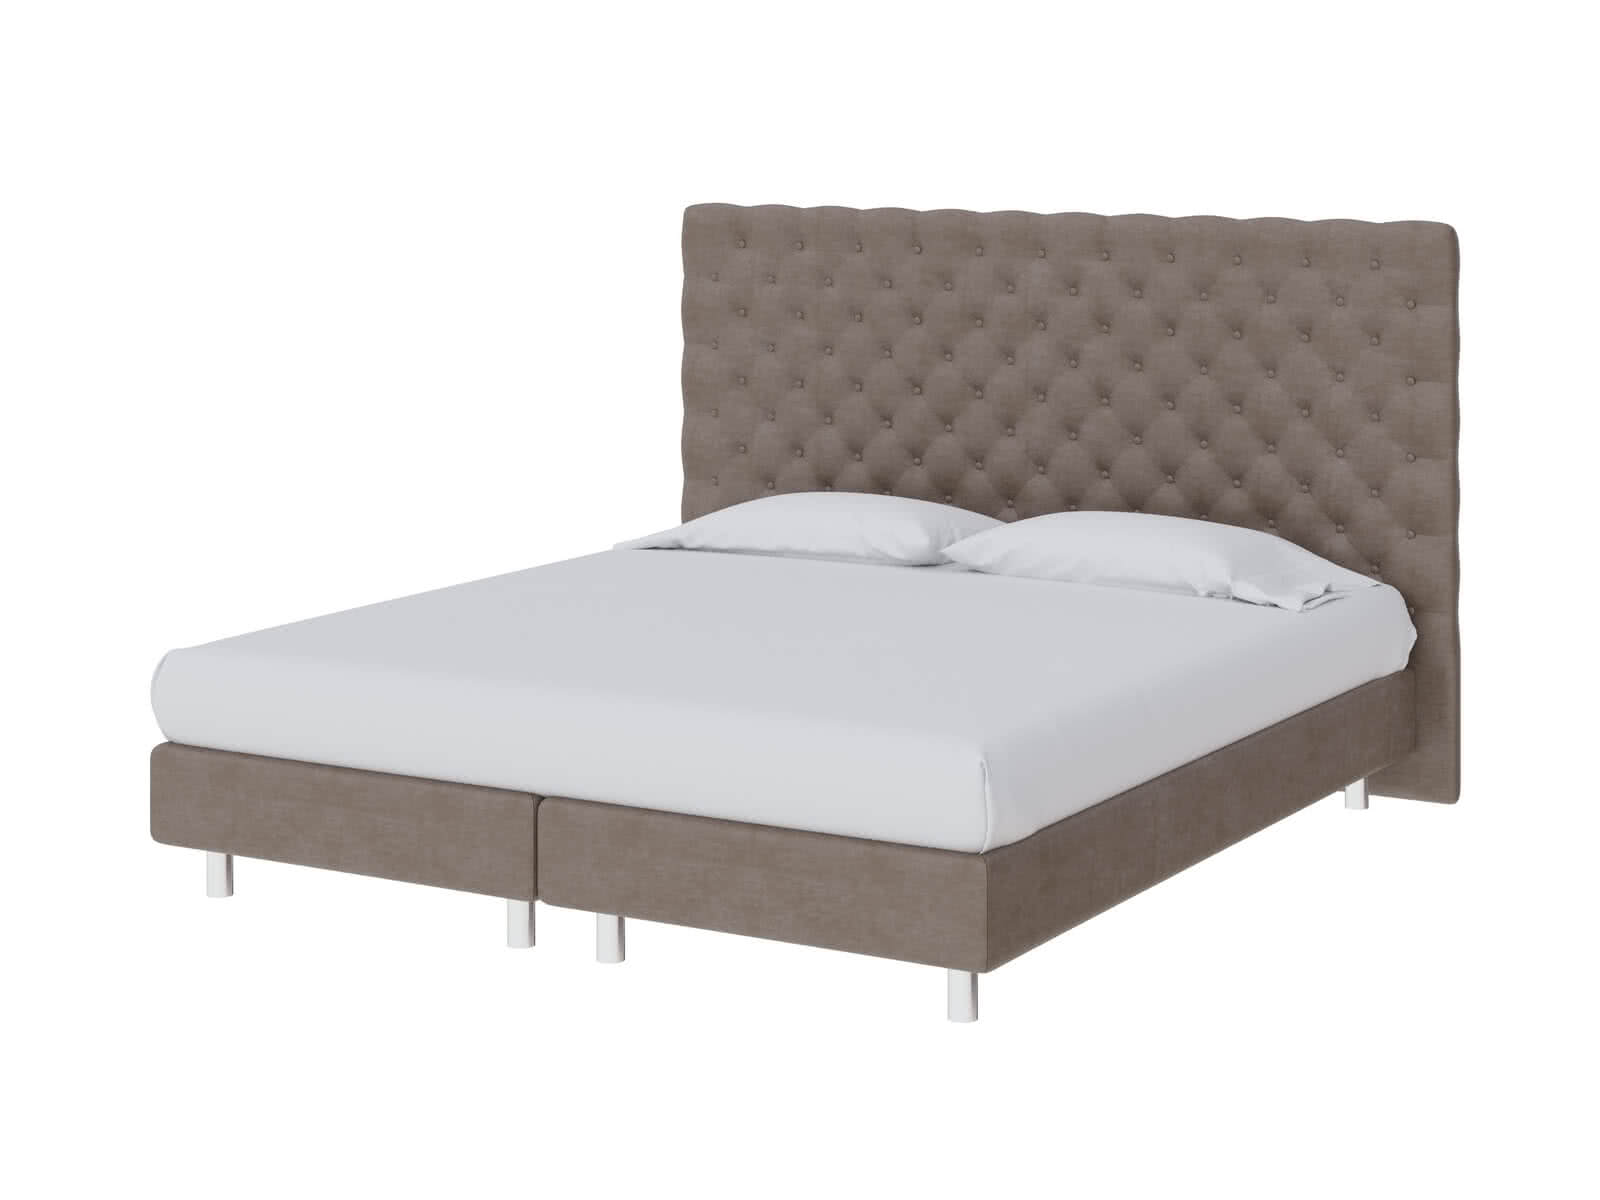 Купить кровать ProSon Кровать ProSon Europe Paris Lift, Лофти Лён 80 х 200 см Лофти Лён дешево на официальном сайте